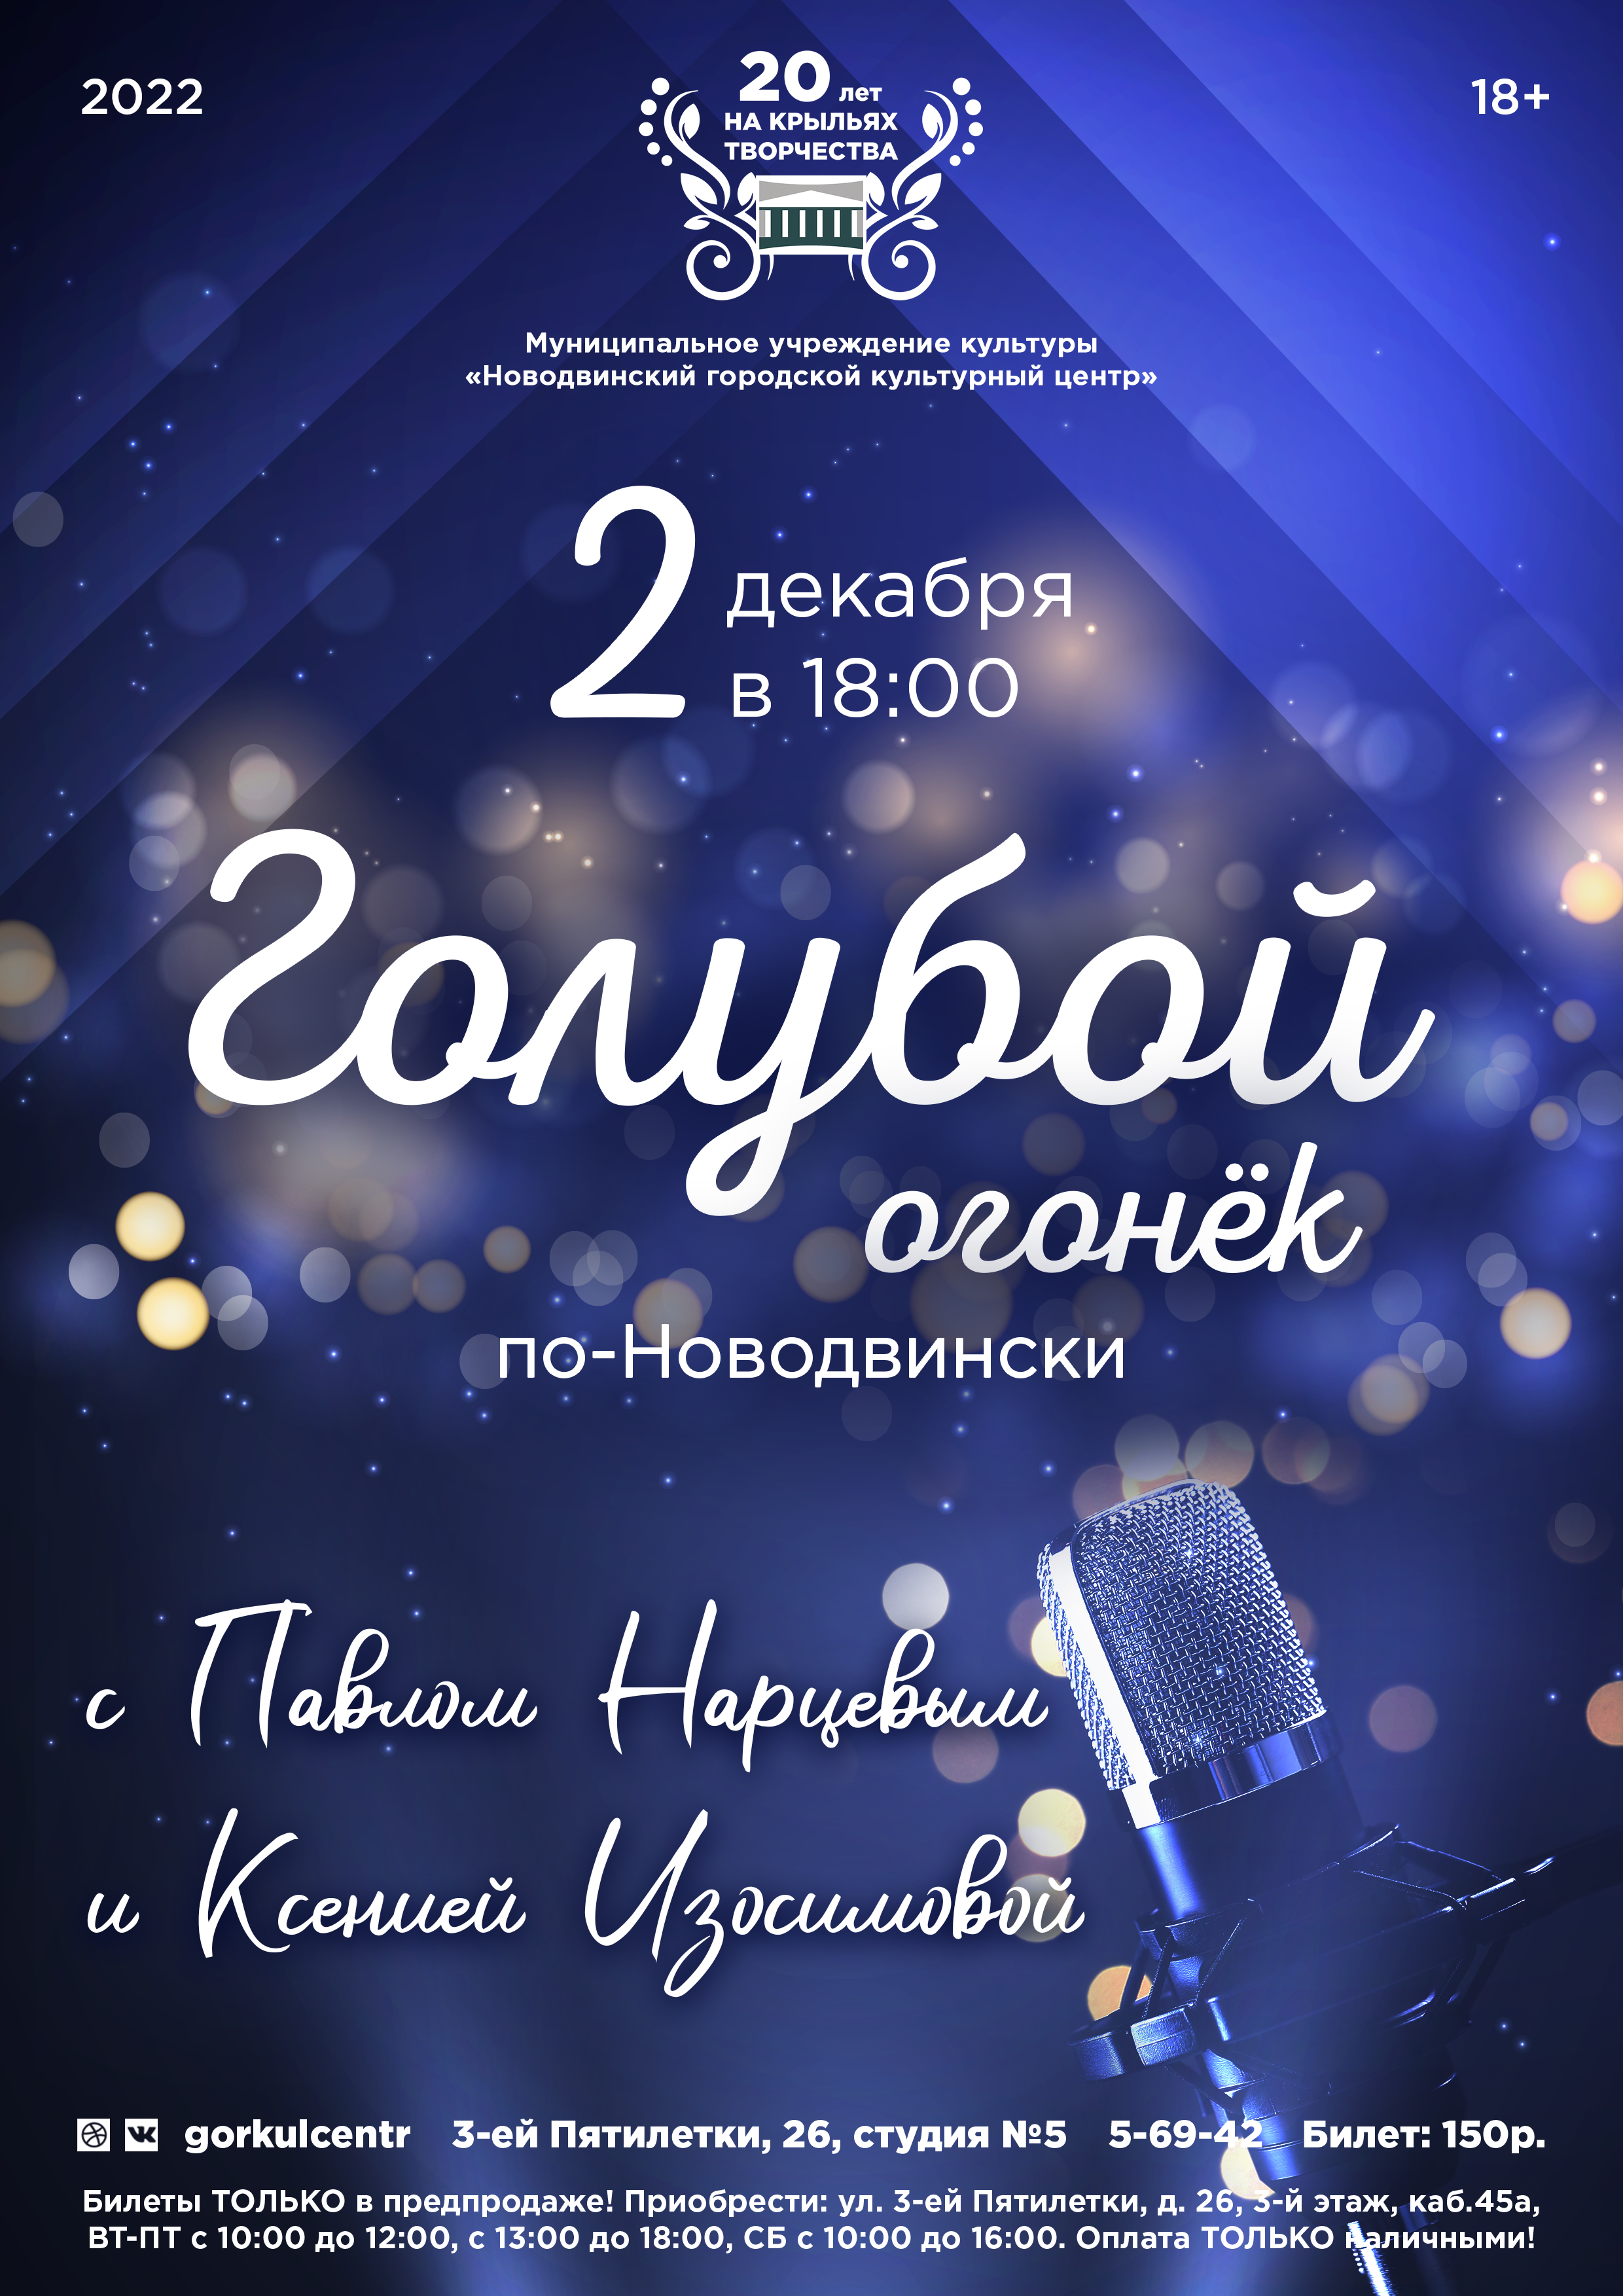 Успевайте приобрести билеты на «Голубой огонёк по-новодвински» с Павлом Нарцевым и Ксенией Изосимовой!